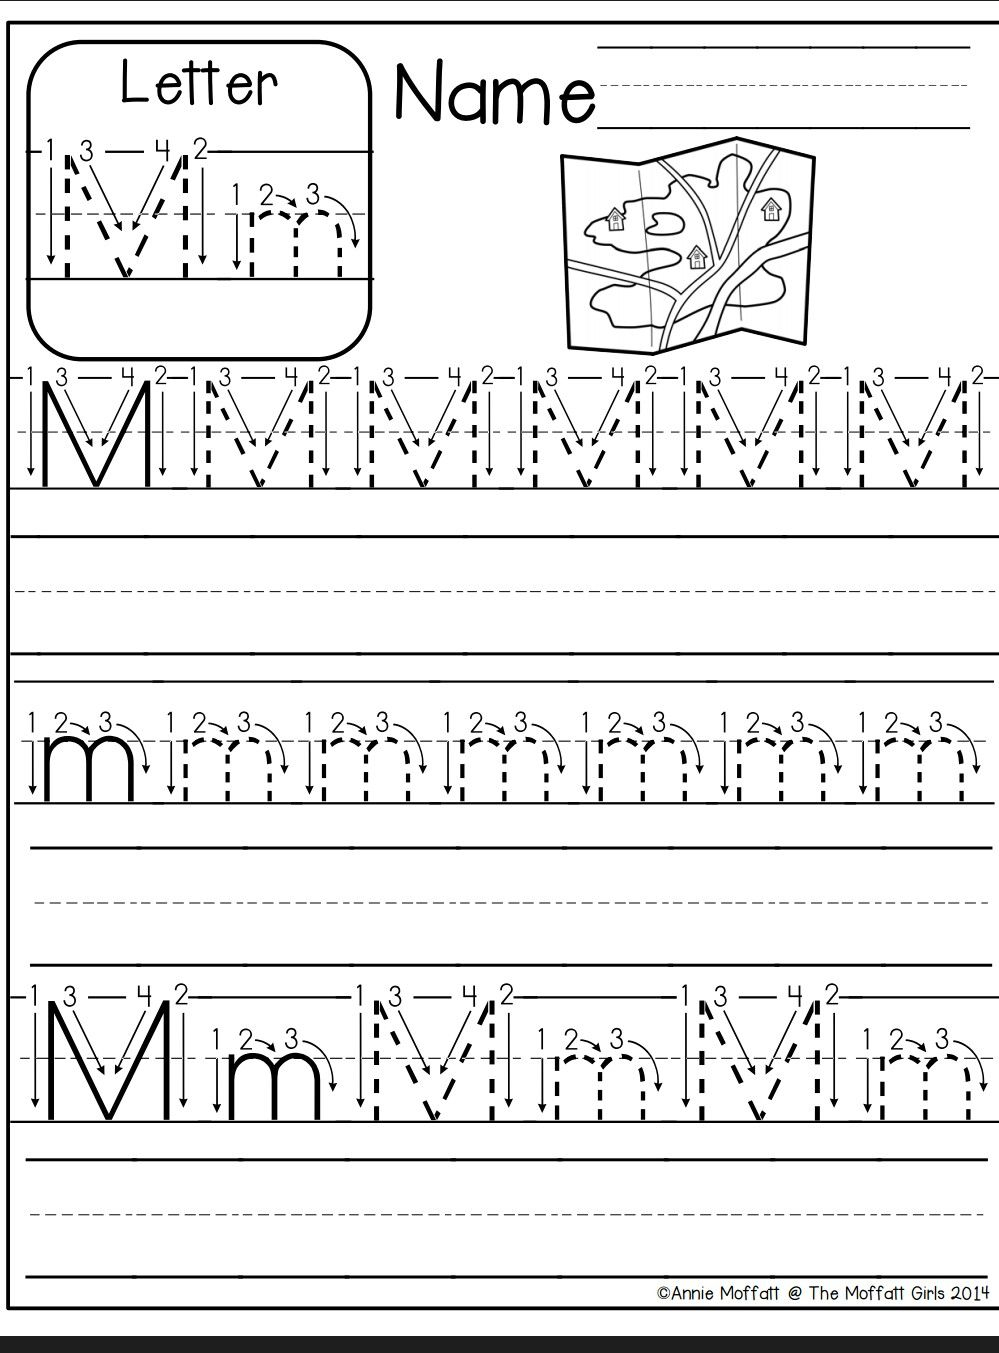 Tracing Letter M Worksheets Kindergarten Printable Letter M Tracing Worksheets For Preschool 